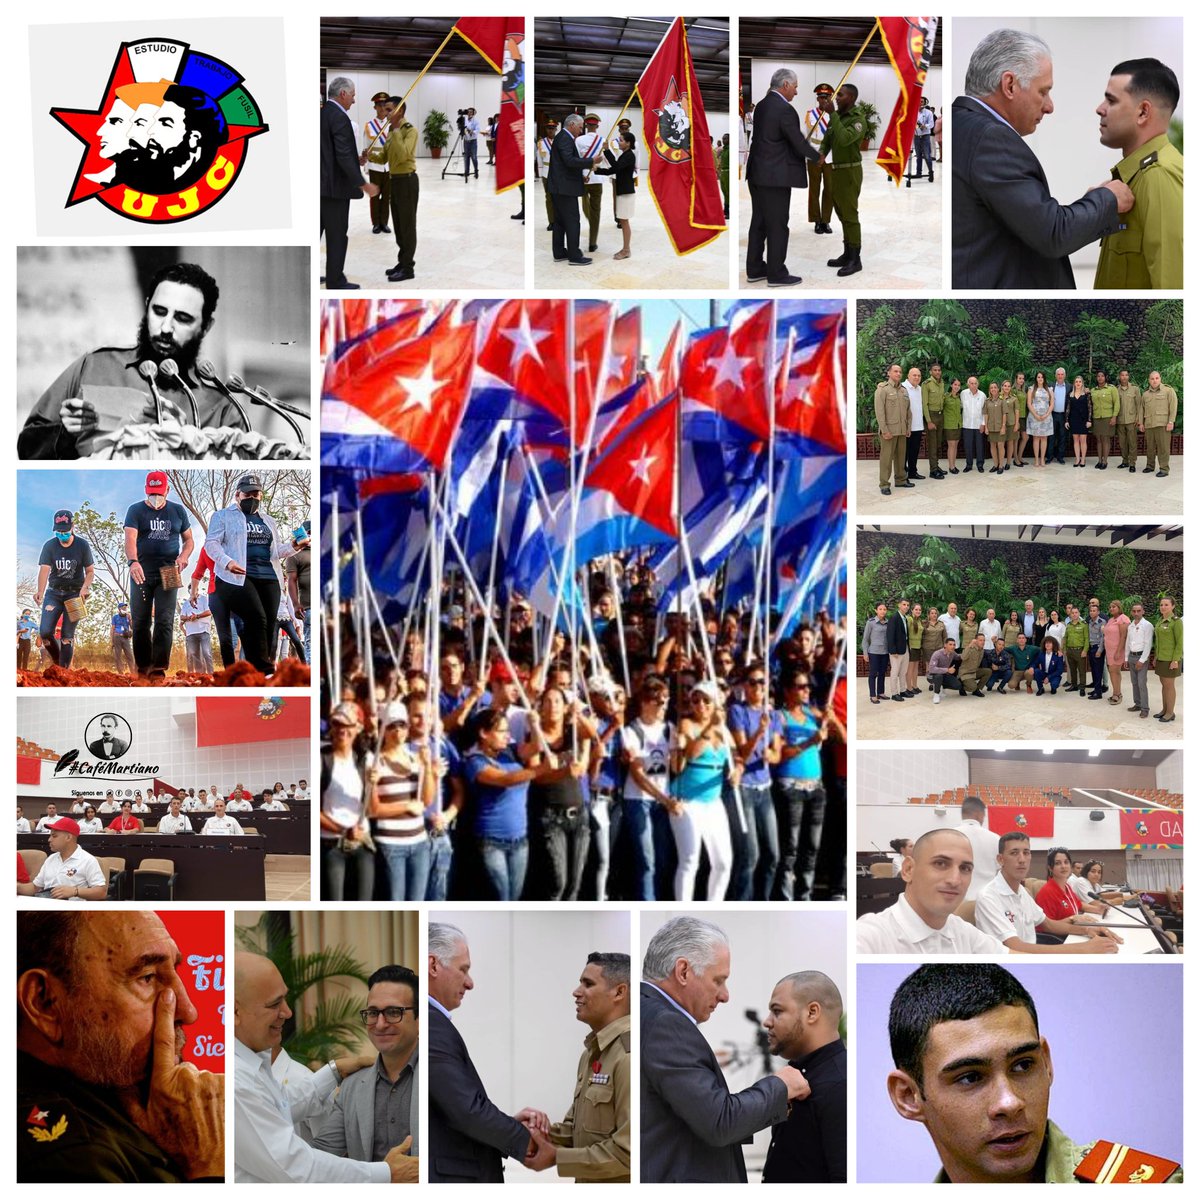 Buenos días 🇨🇺 #CaféMartiano La palabra escrita del Maestro en Patria, hace 132 años, se vive en el #12CongresoUJC ✍️“La generosidad congrega a los hombres.. El elogio oportuno fomenta el mérito..'. 'el estímulo a la honradez, el estímulo al patriotismo (...)'. #Fidel #Cuba